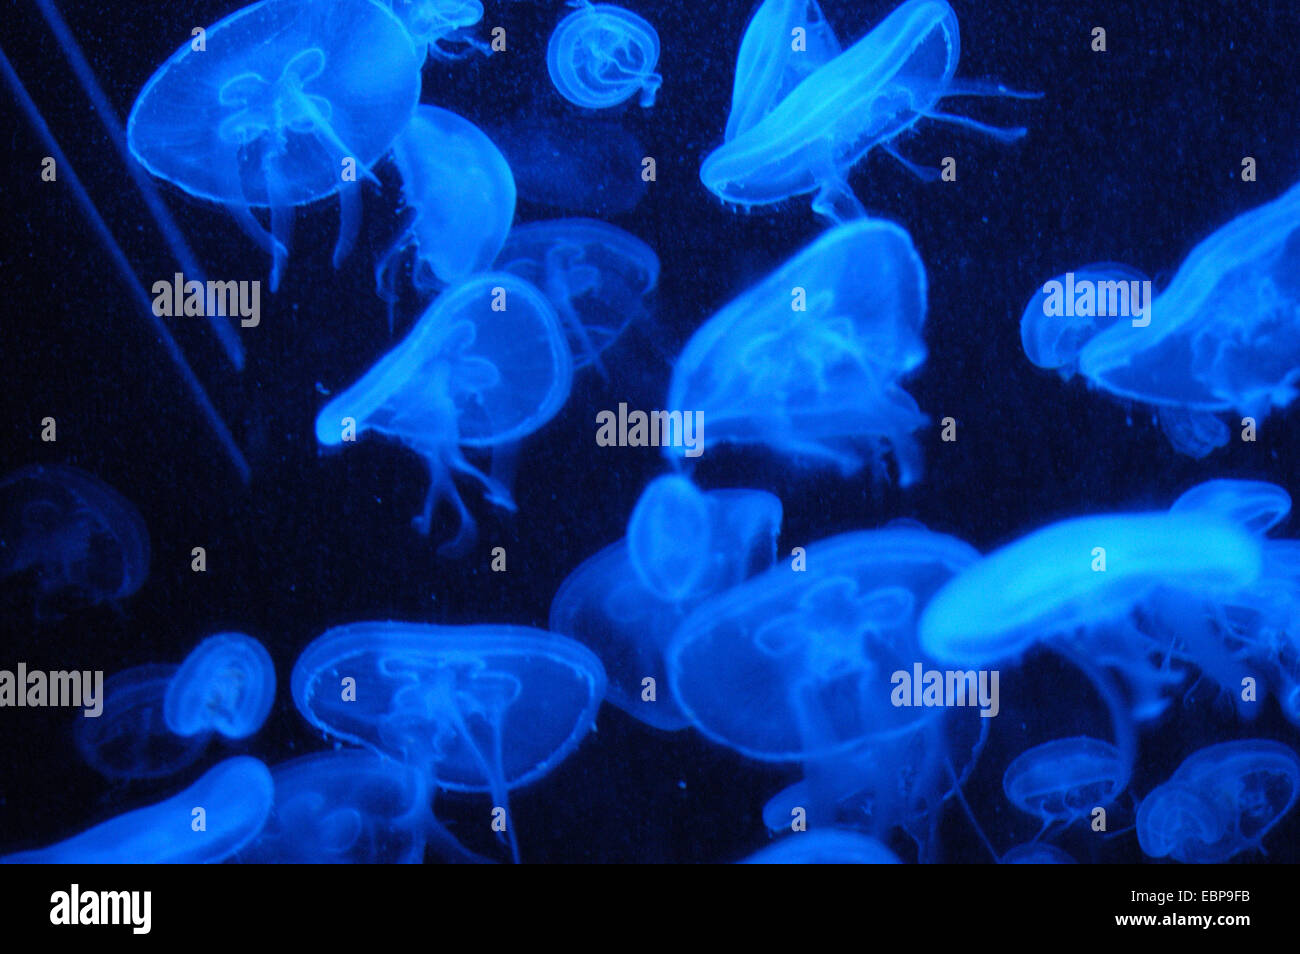 Moon jellyfishes (Aurelia aurita) at Schonbrunn Zoo in Vienna, Austria. Stock Photo